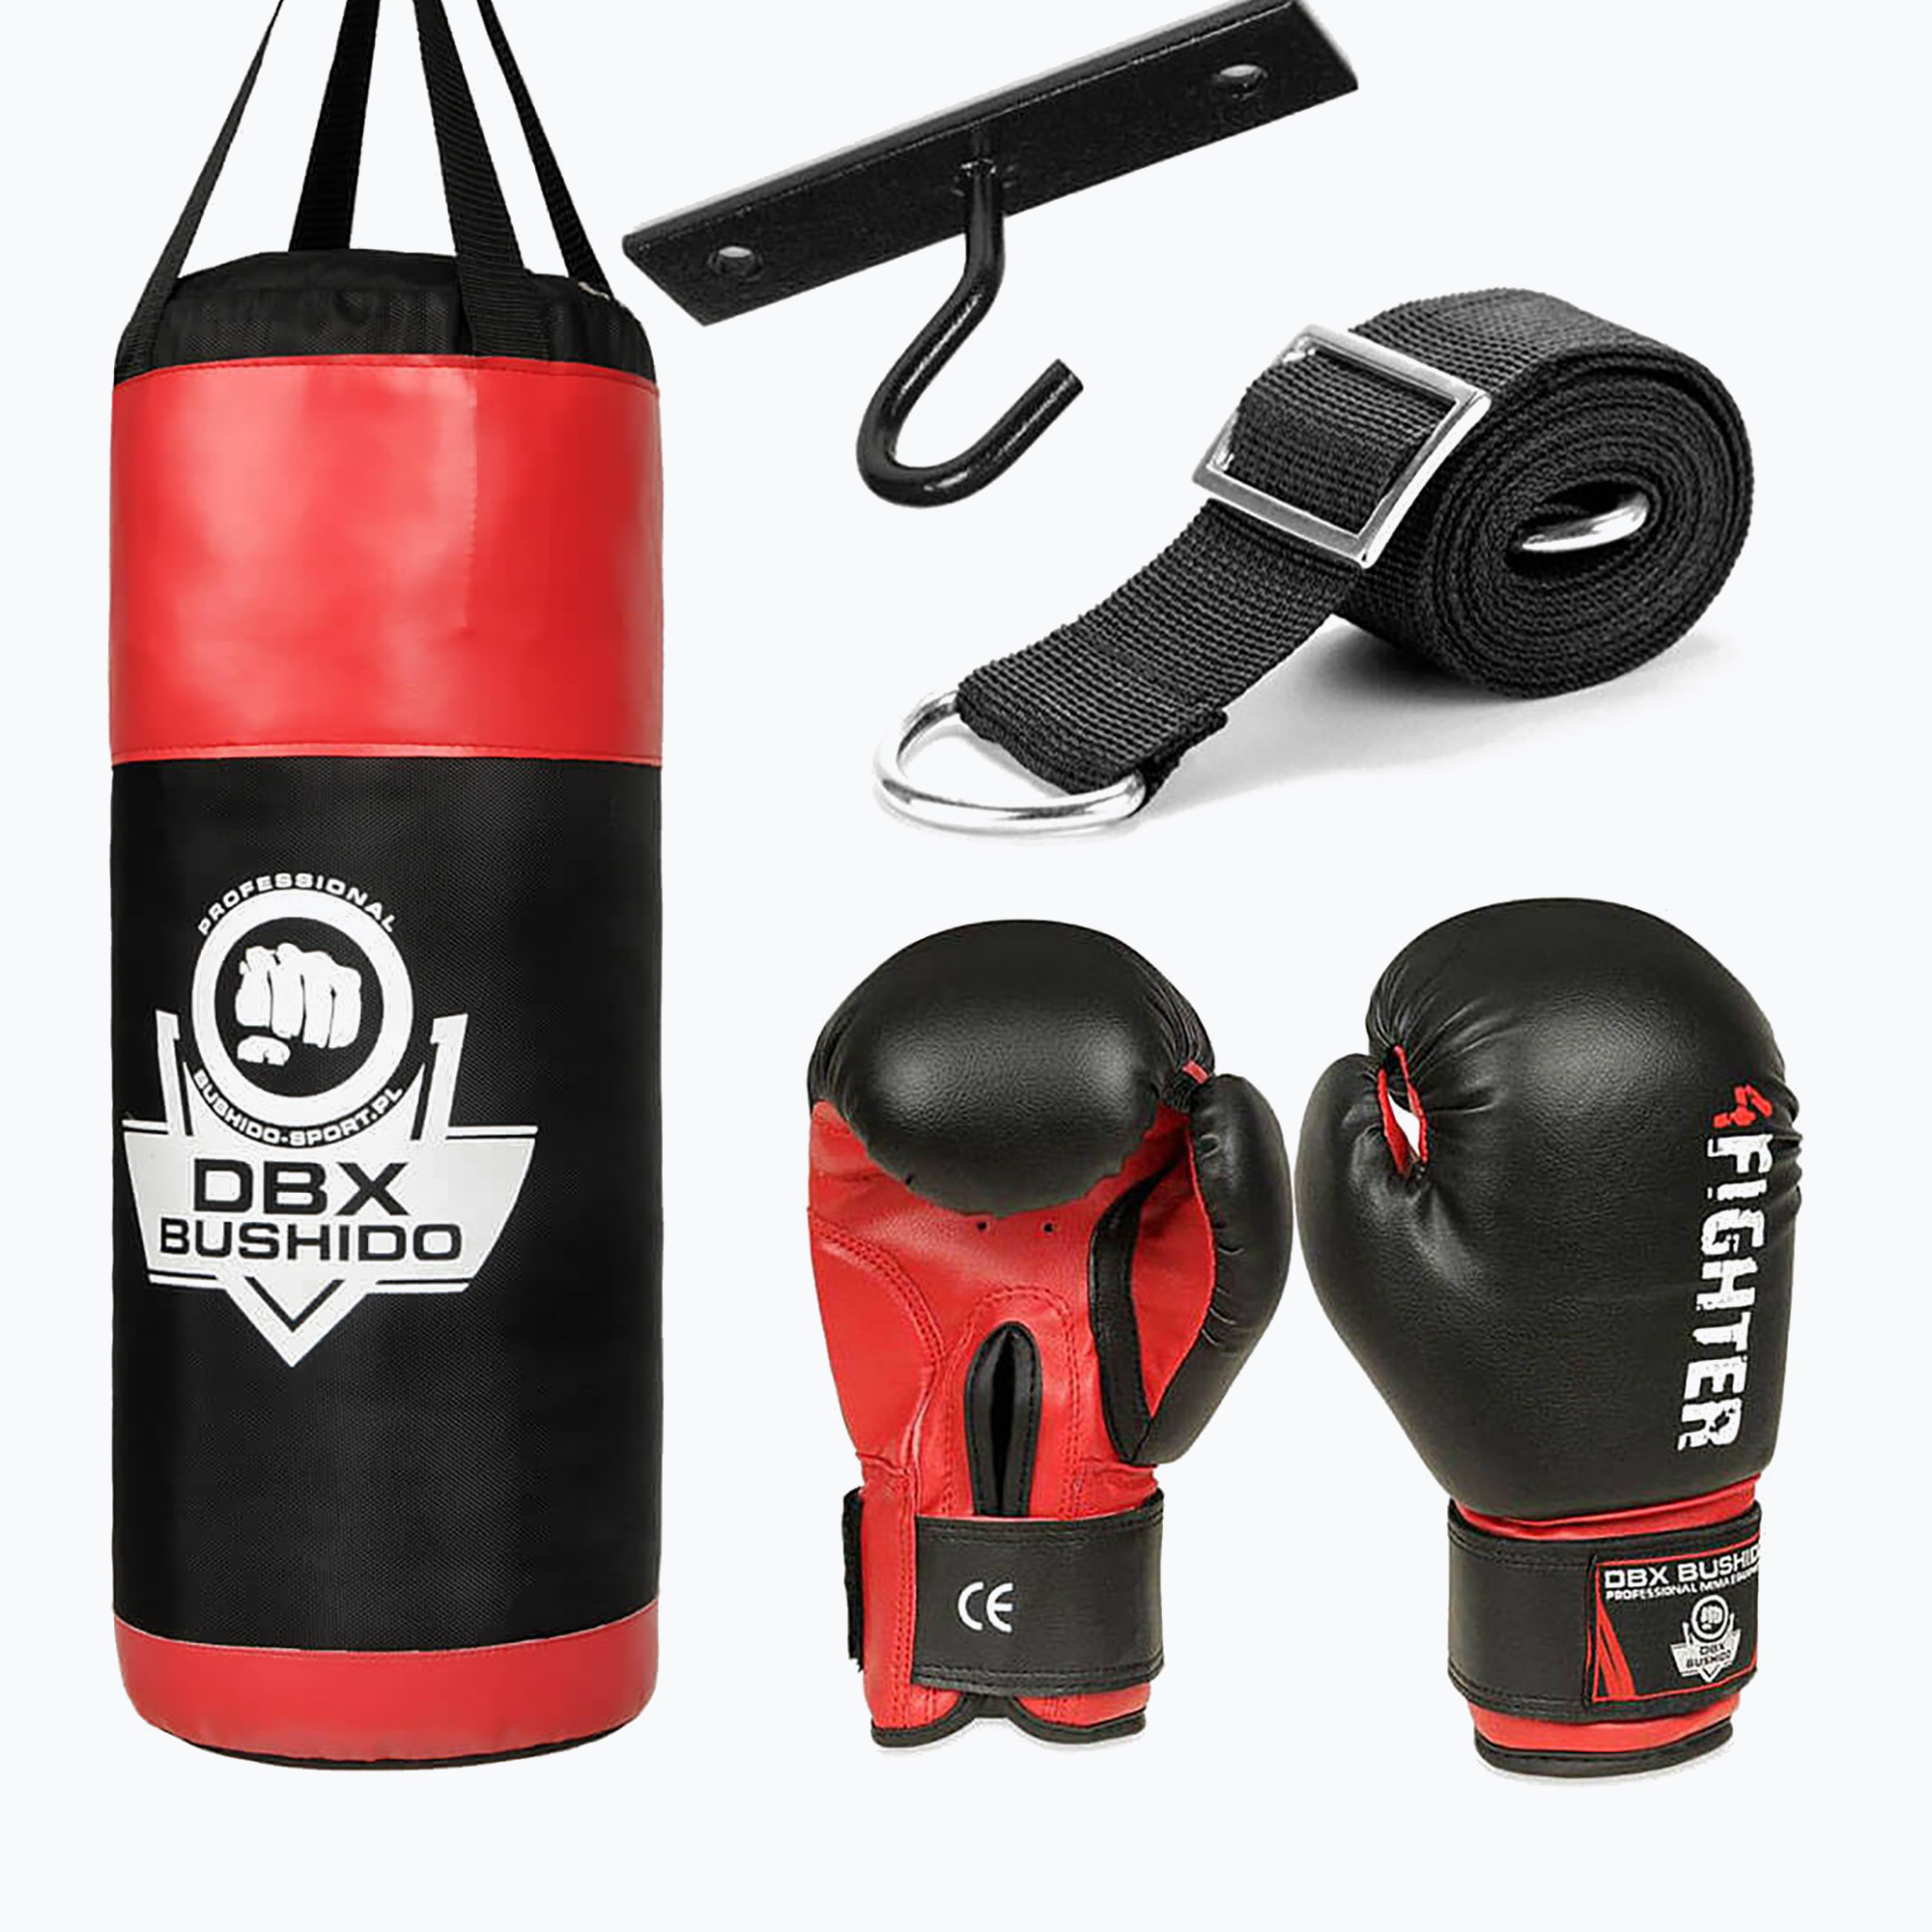 Bushido DBX Copii kit de box negru și roșu KIDS60SET